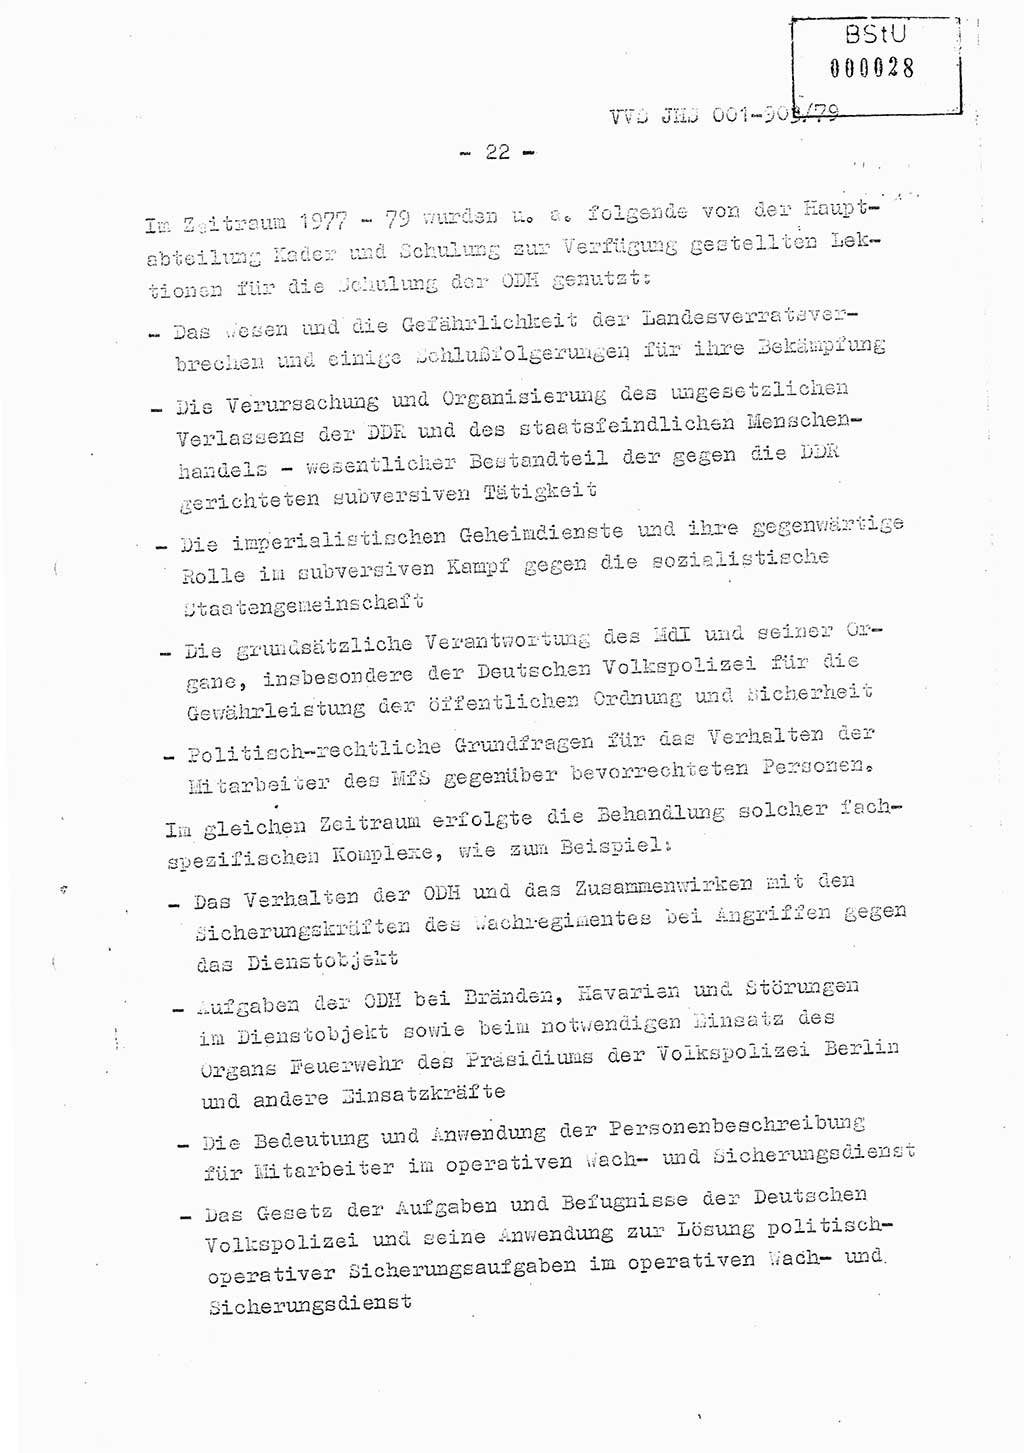 Fachschulabschlußarbeit Oberleutnant Jochen Pfeffer (HA Ⅸ/AGL), Ministerium für Staatssicherheit (MfS) [Deutsche Demokratische Republik (DDR)], Juristische Hochschule (JHS), Vertrauliche Verschlußsache (VVS) 001-903/79, Potsdam 1979, Seite 22 (FS-Abschl.-Arb. MfS DDR JHS VVS 001-903/79 1979, S. 22)